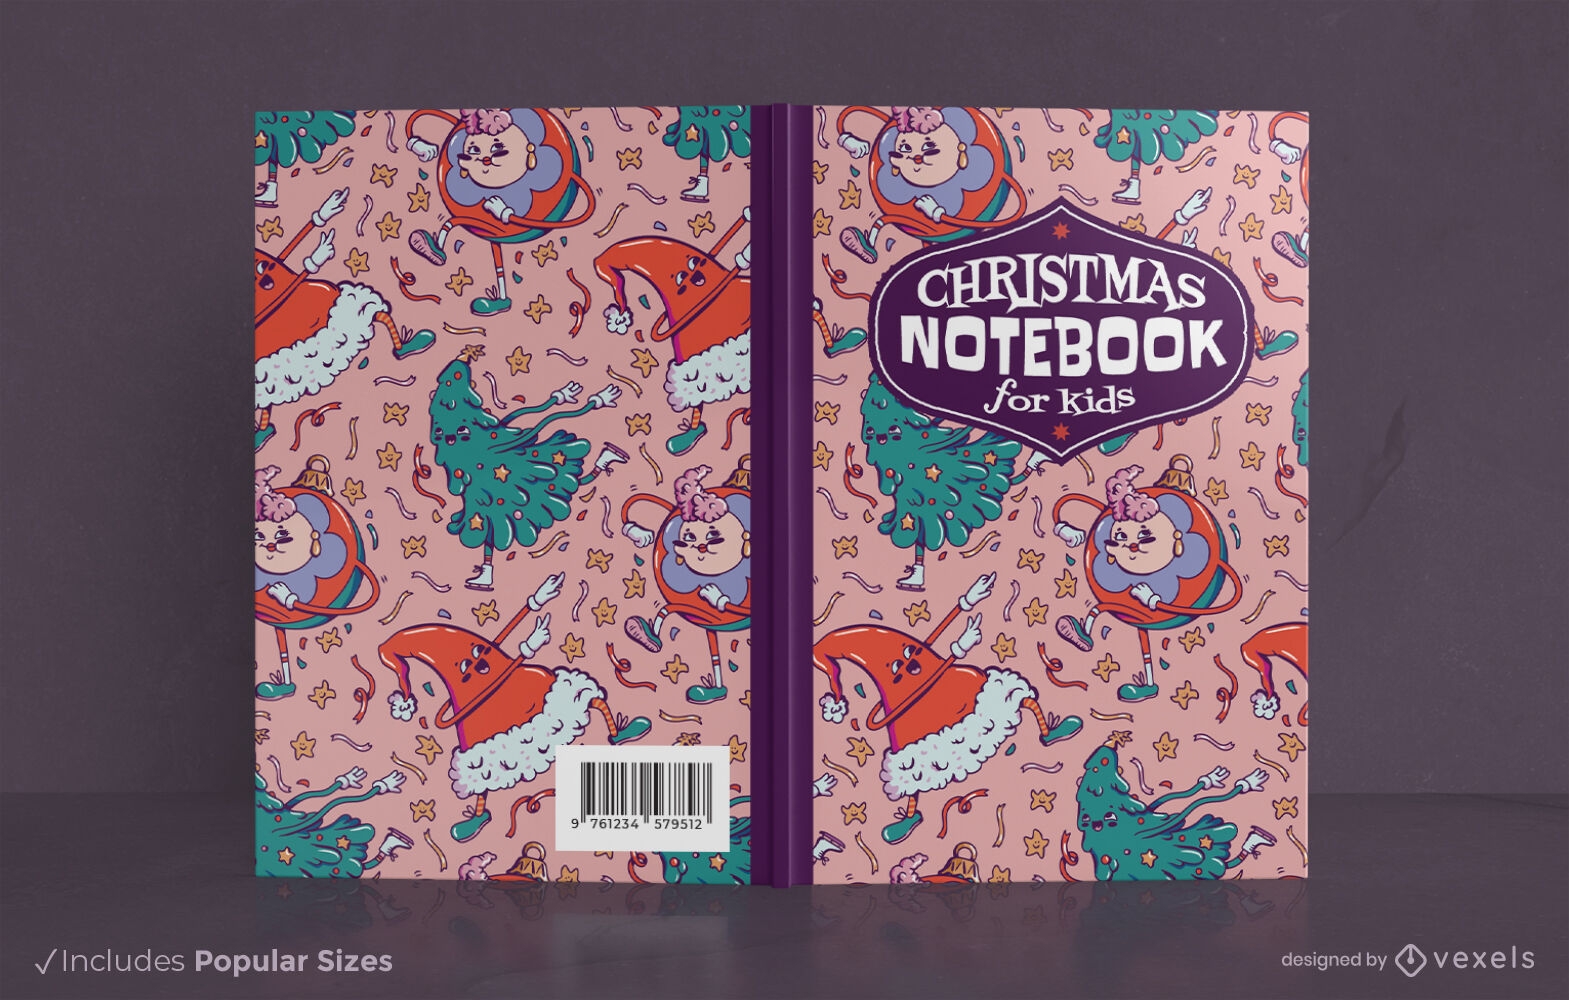 Dise?o de portada de libro de cuaderno de Navidad para ni?os.